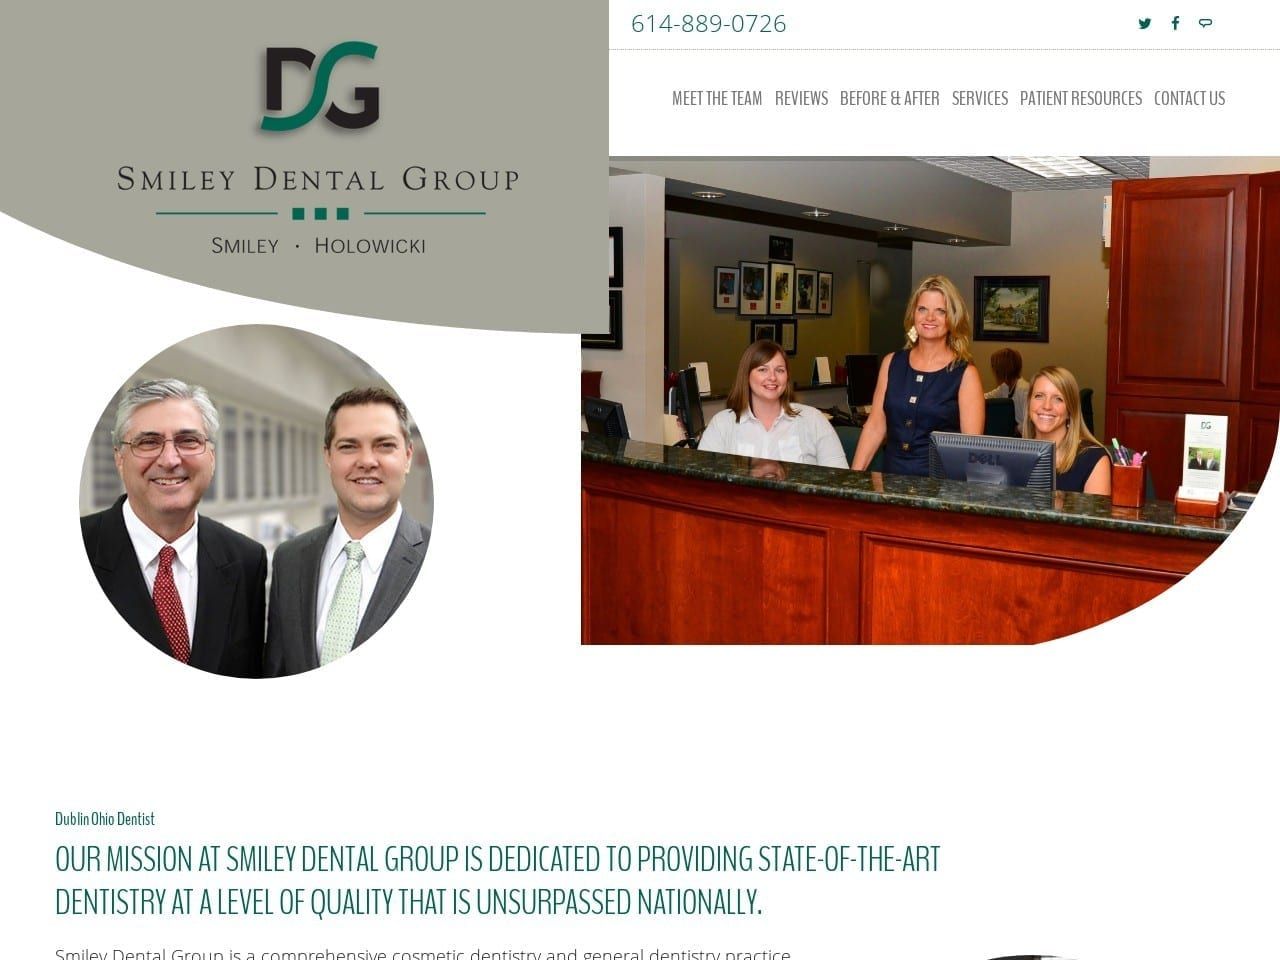 Smiley Dental Group Website Screenshot from smileydentalgroup.com